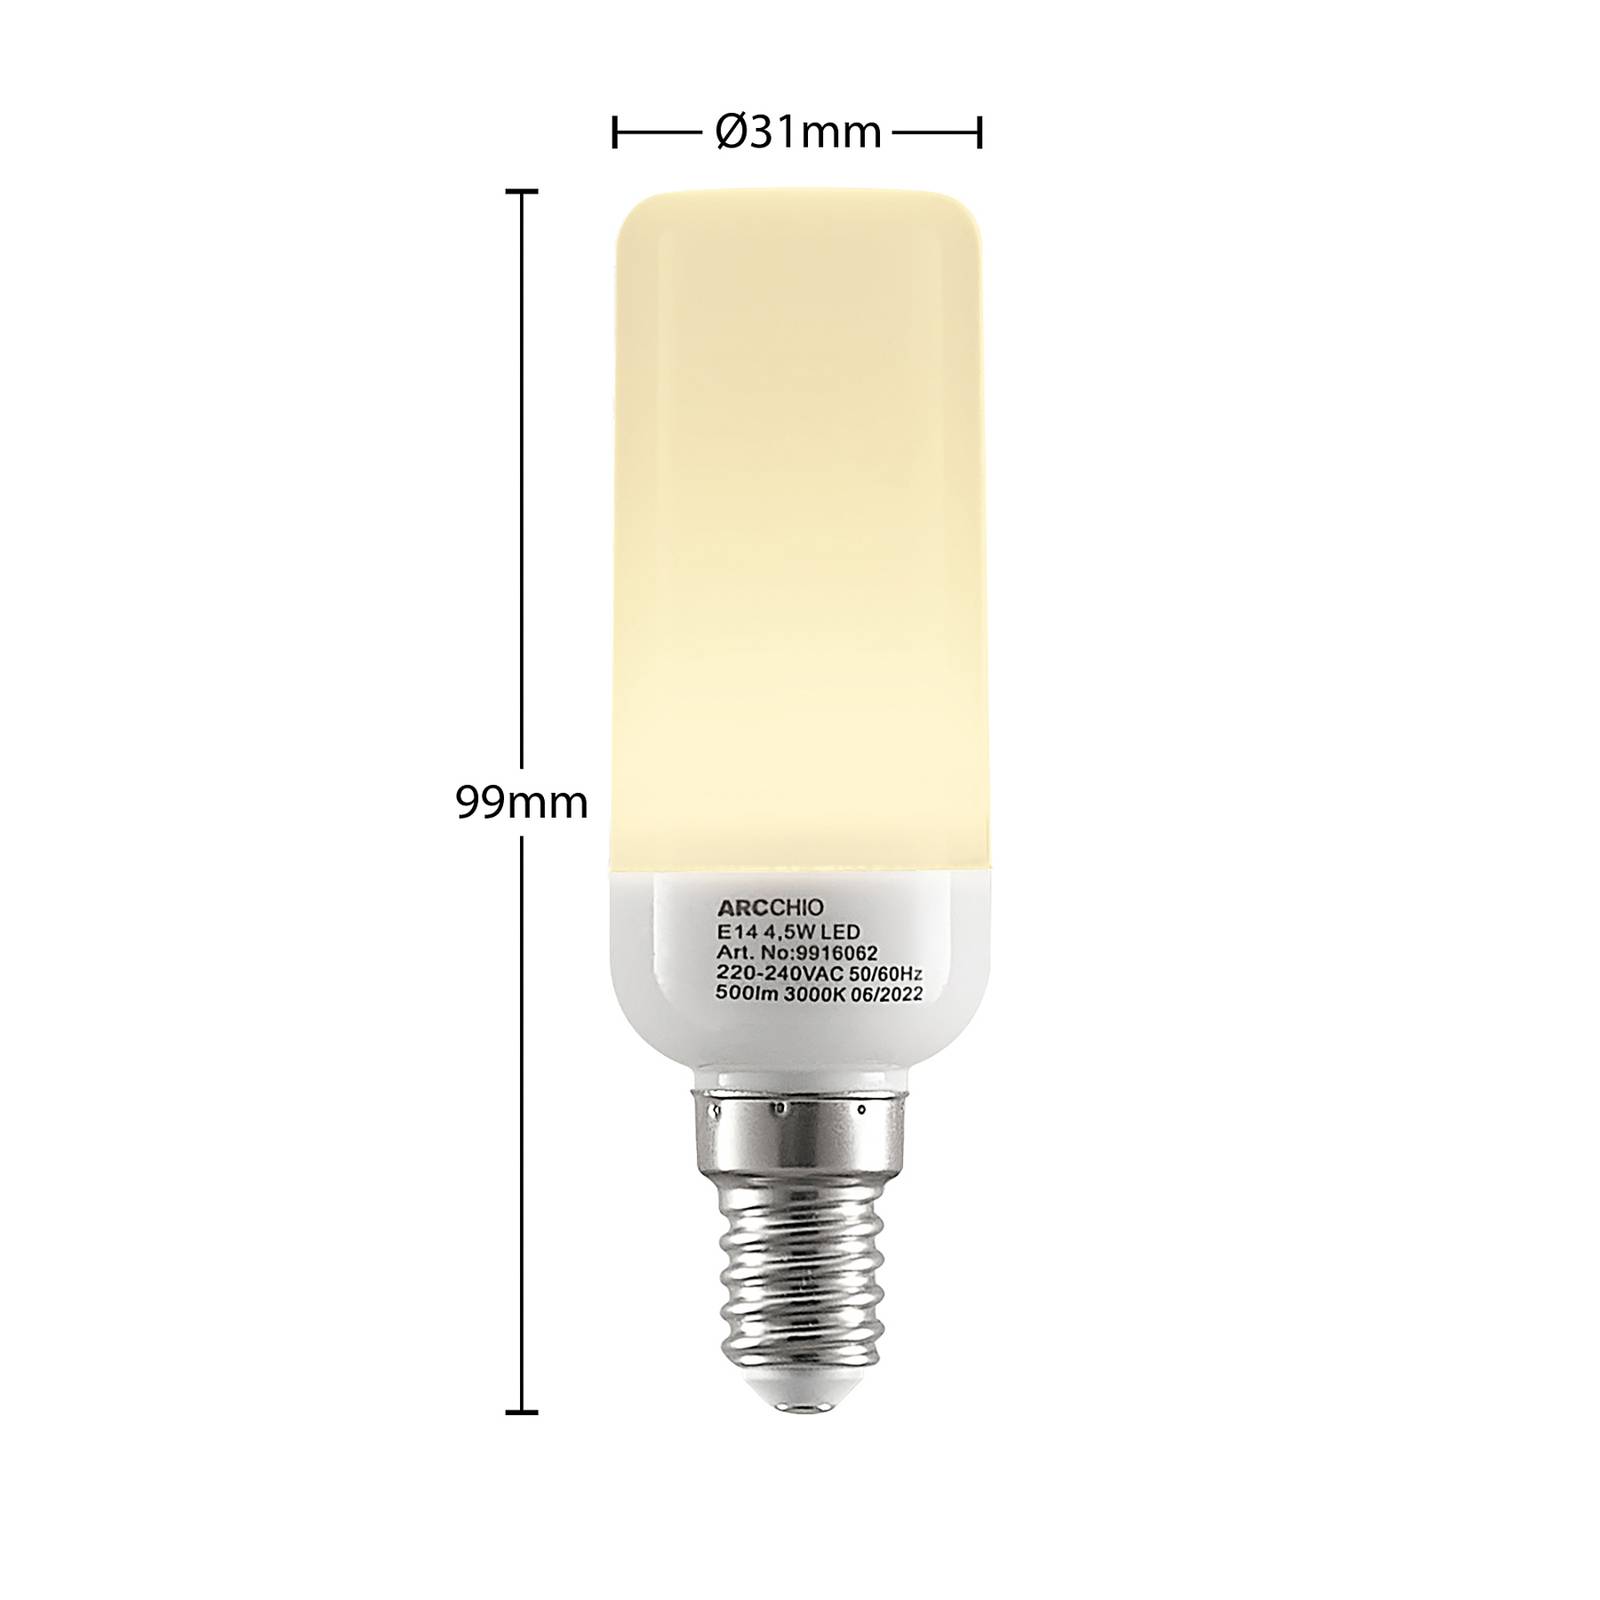 Arcchio LED trubicová žiarovka E14 4,5W 3000K sada 3